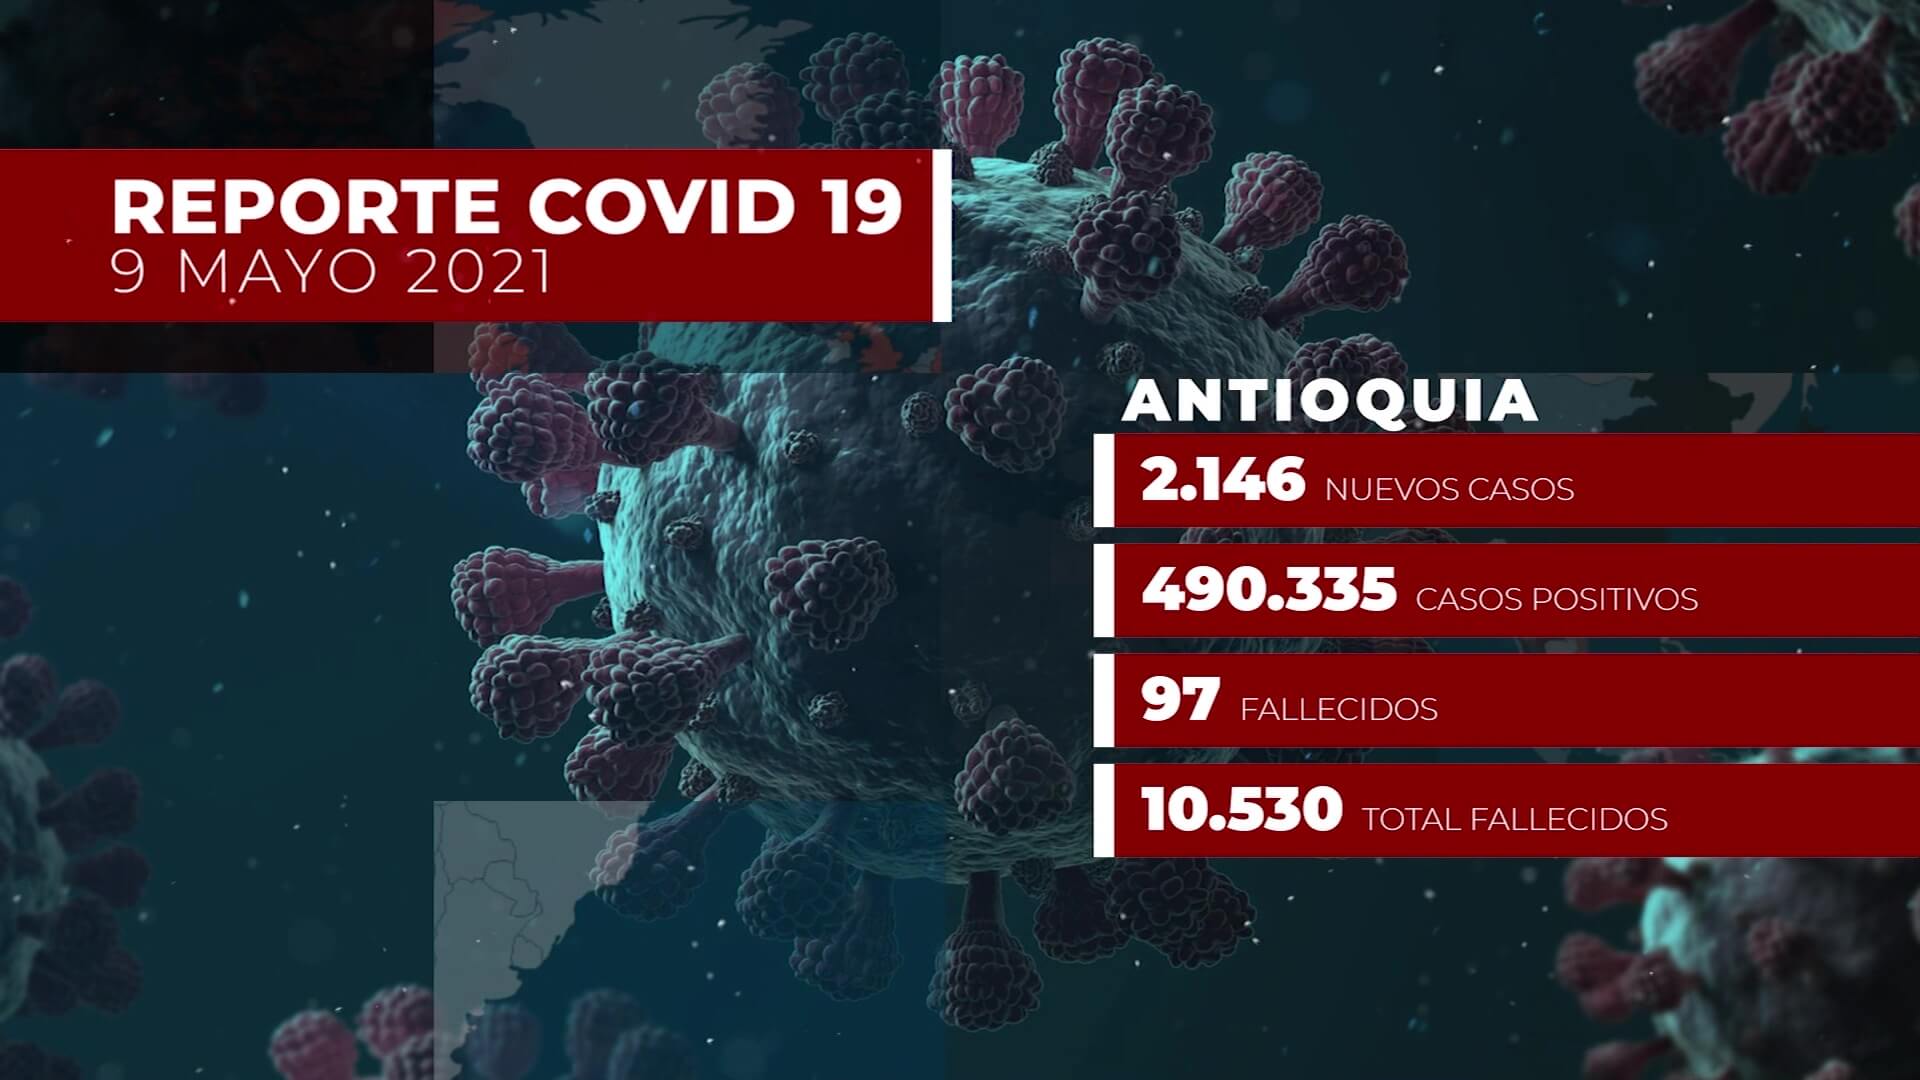 2.146 nuevos contagios en Antioquia